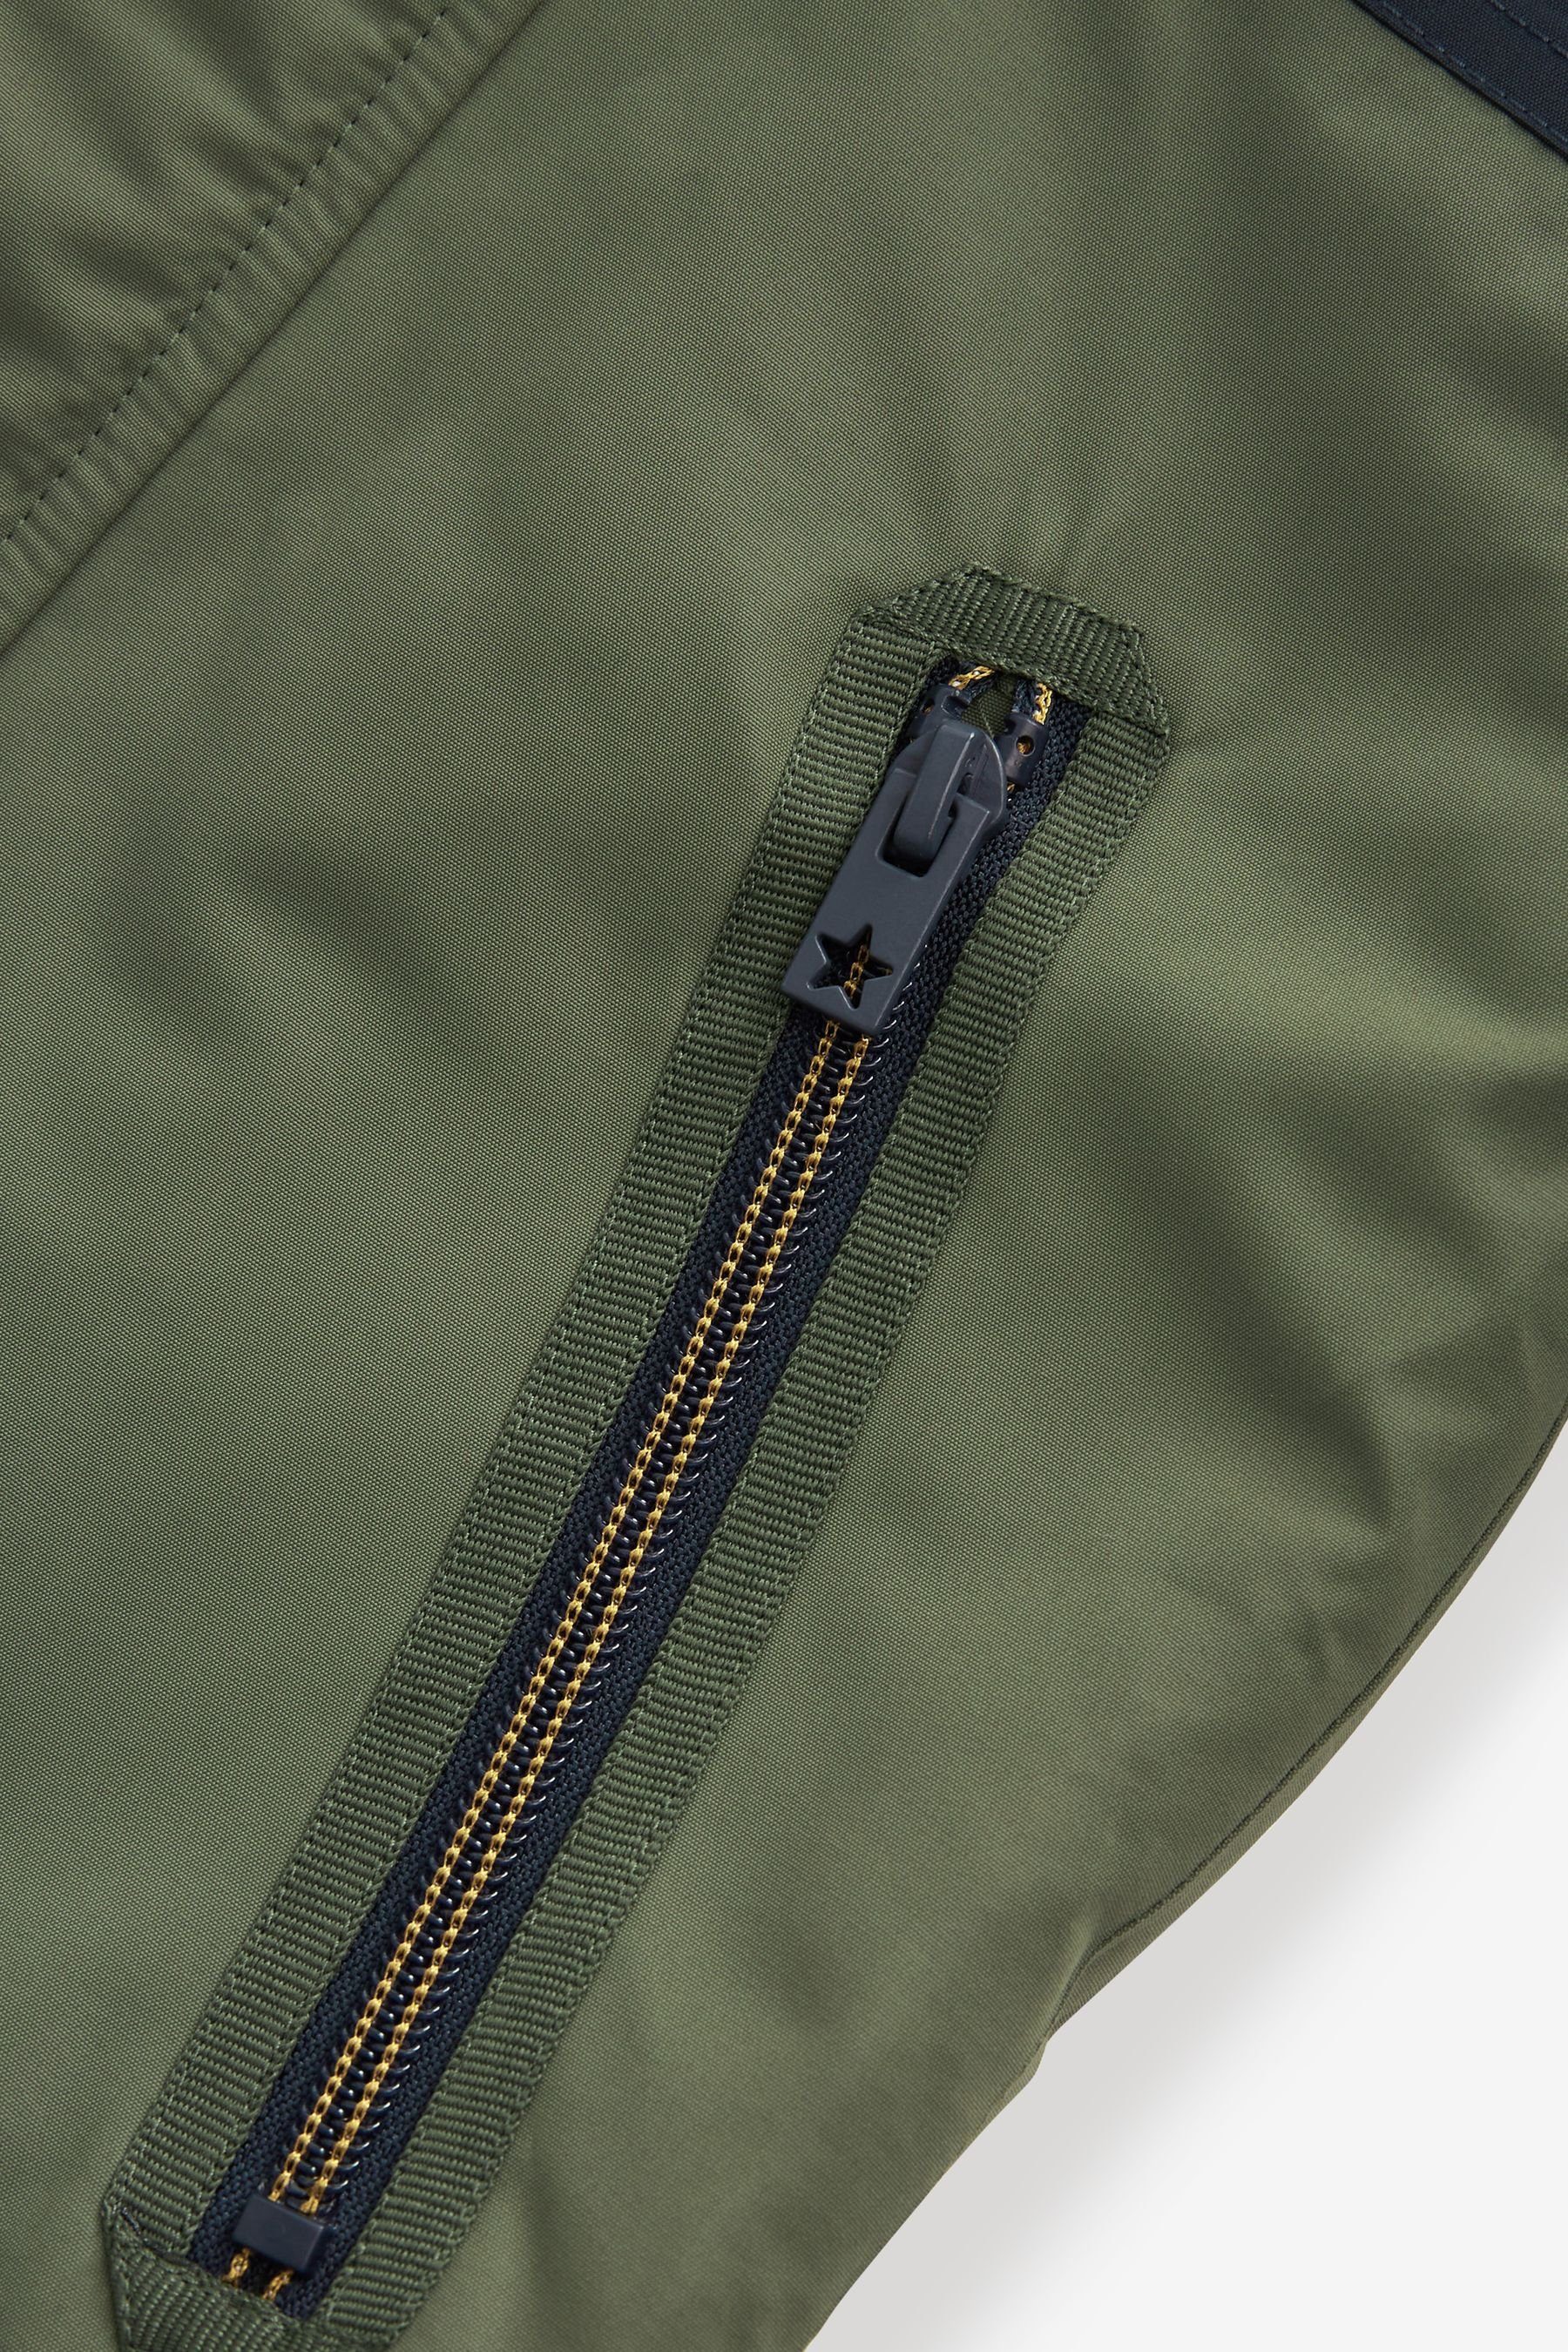 Wasserabweisender Khaki Mantel Funktionsjacke mit Plüschfutter (1-St) Next Green Colourblock